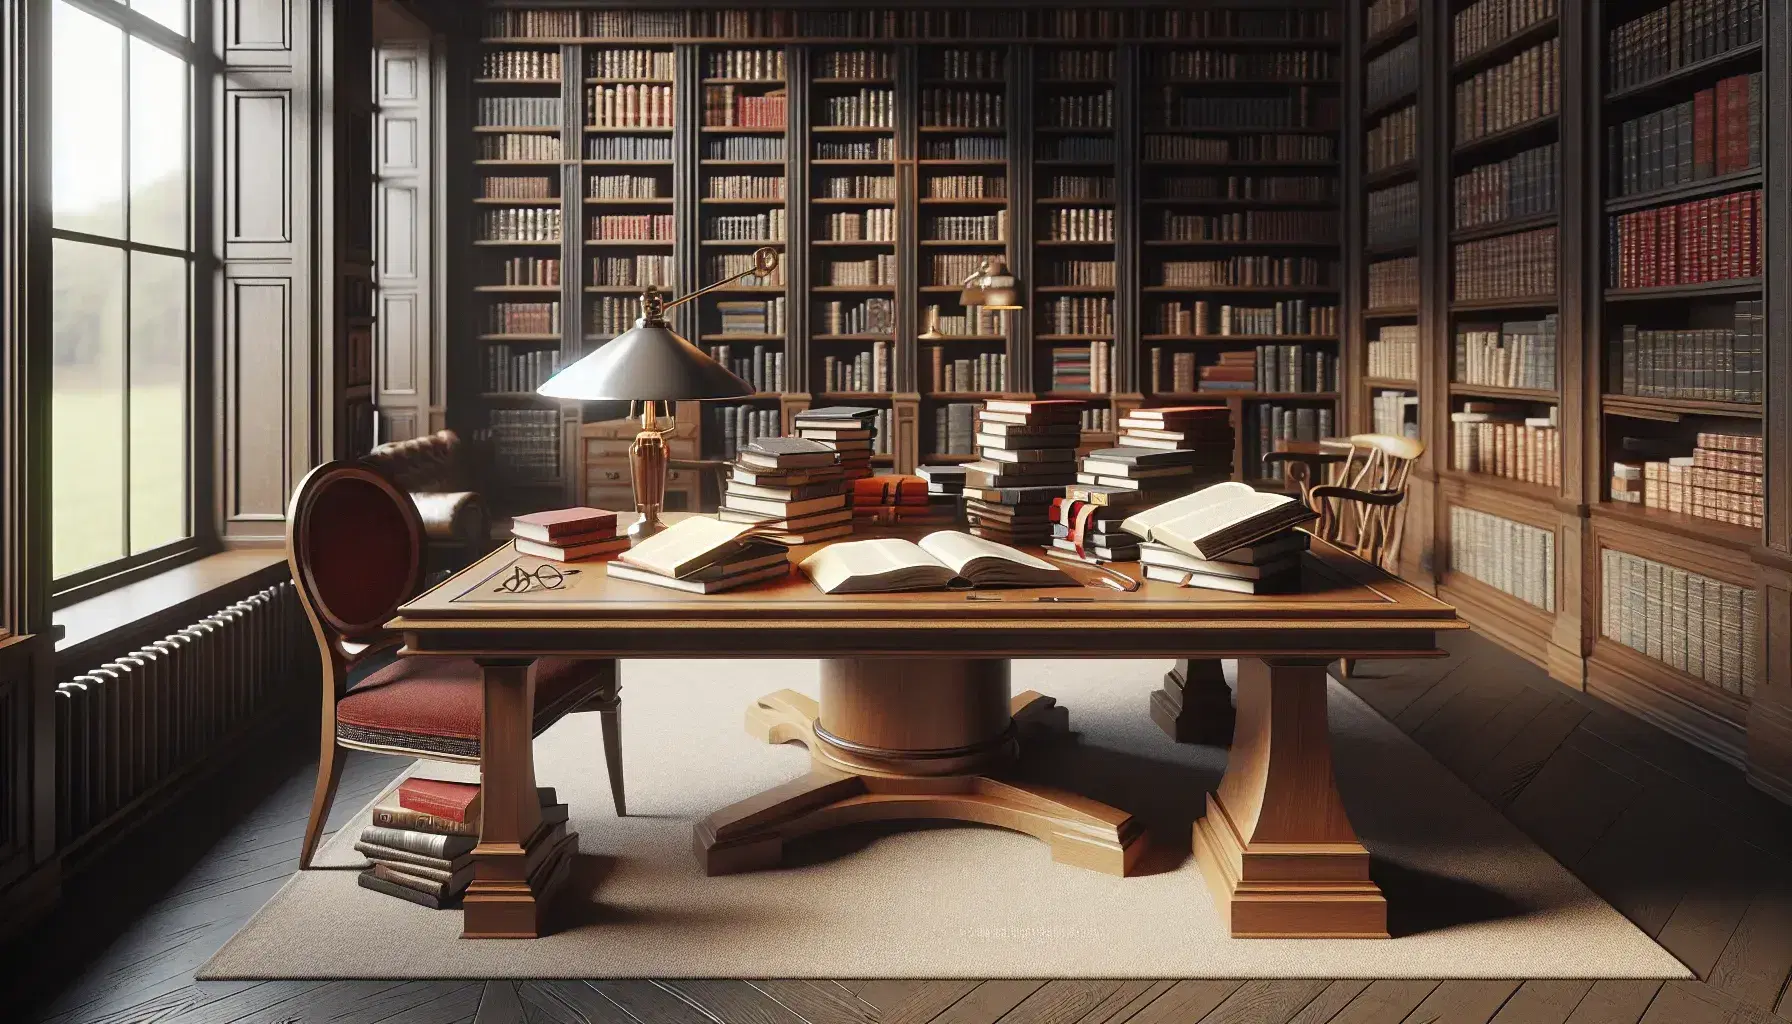 Biblioteca acogedora con estanterías de madera oscura llenas de libros, mesa central con libros abiertos, lámpara encendida y silla con cojín rojo.